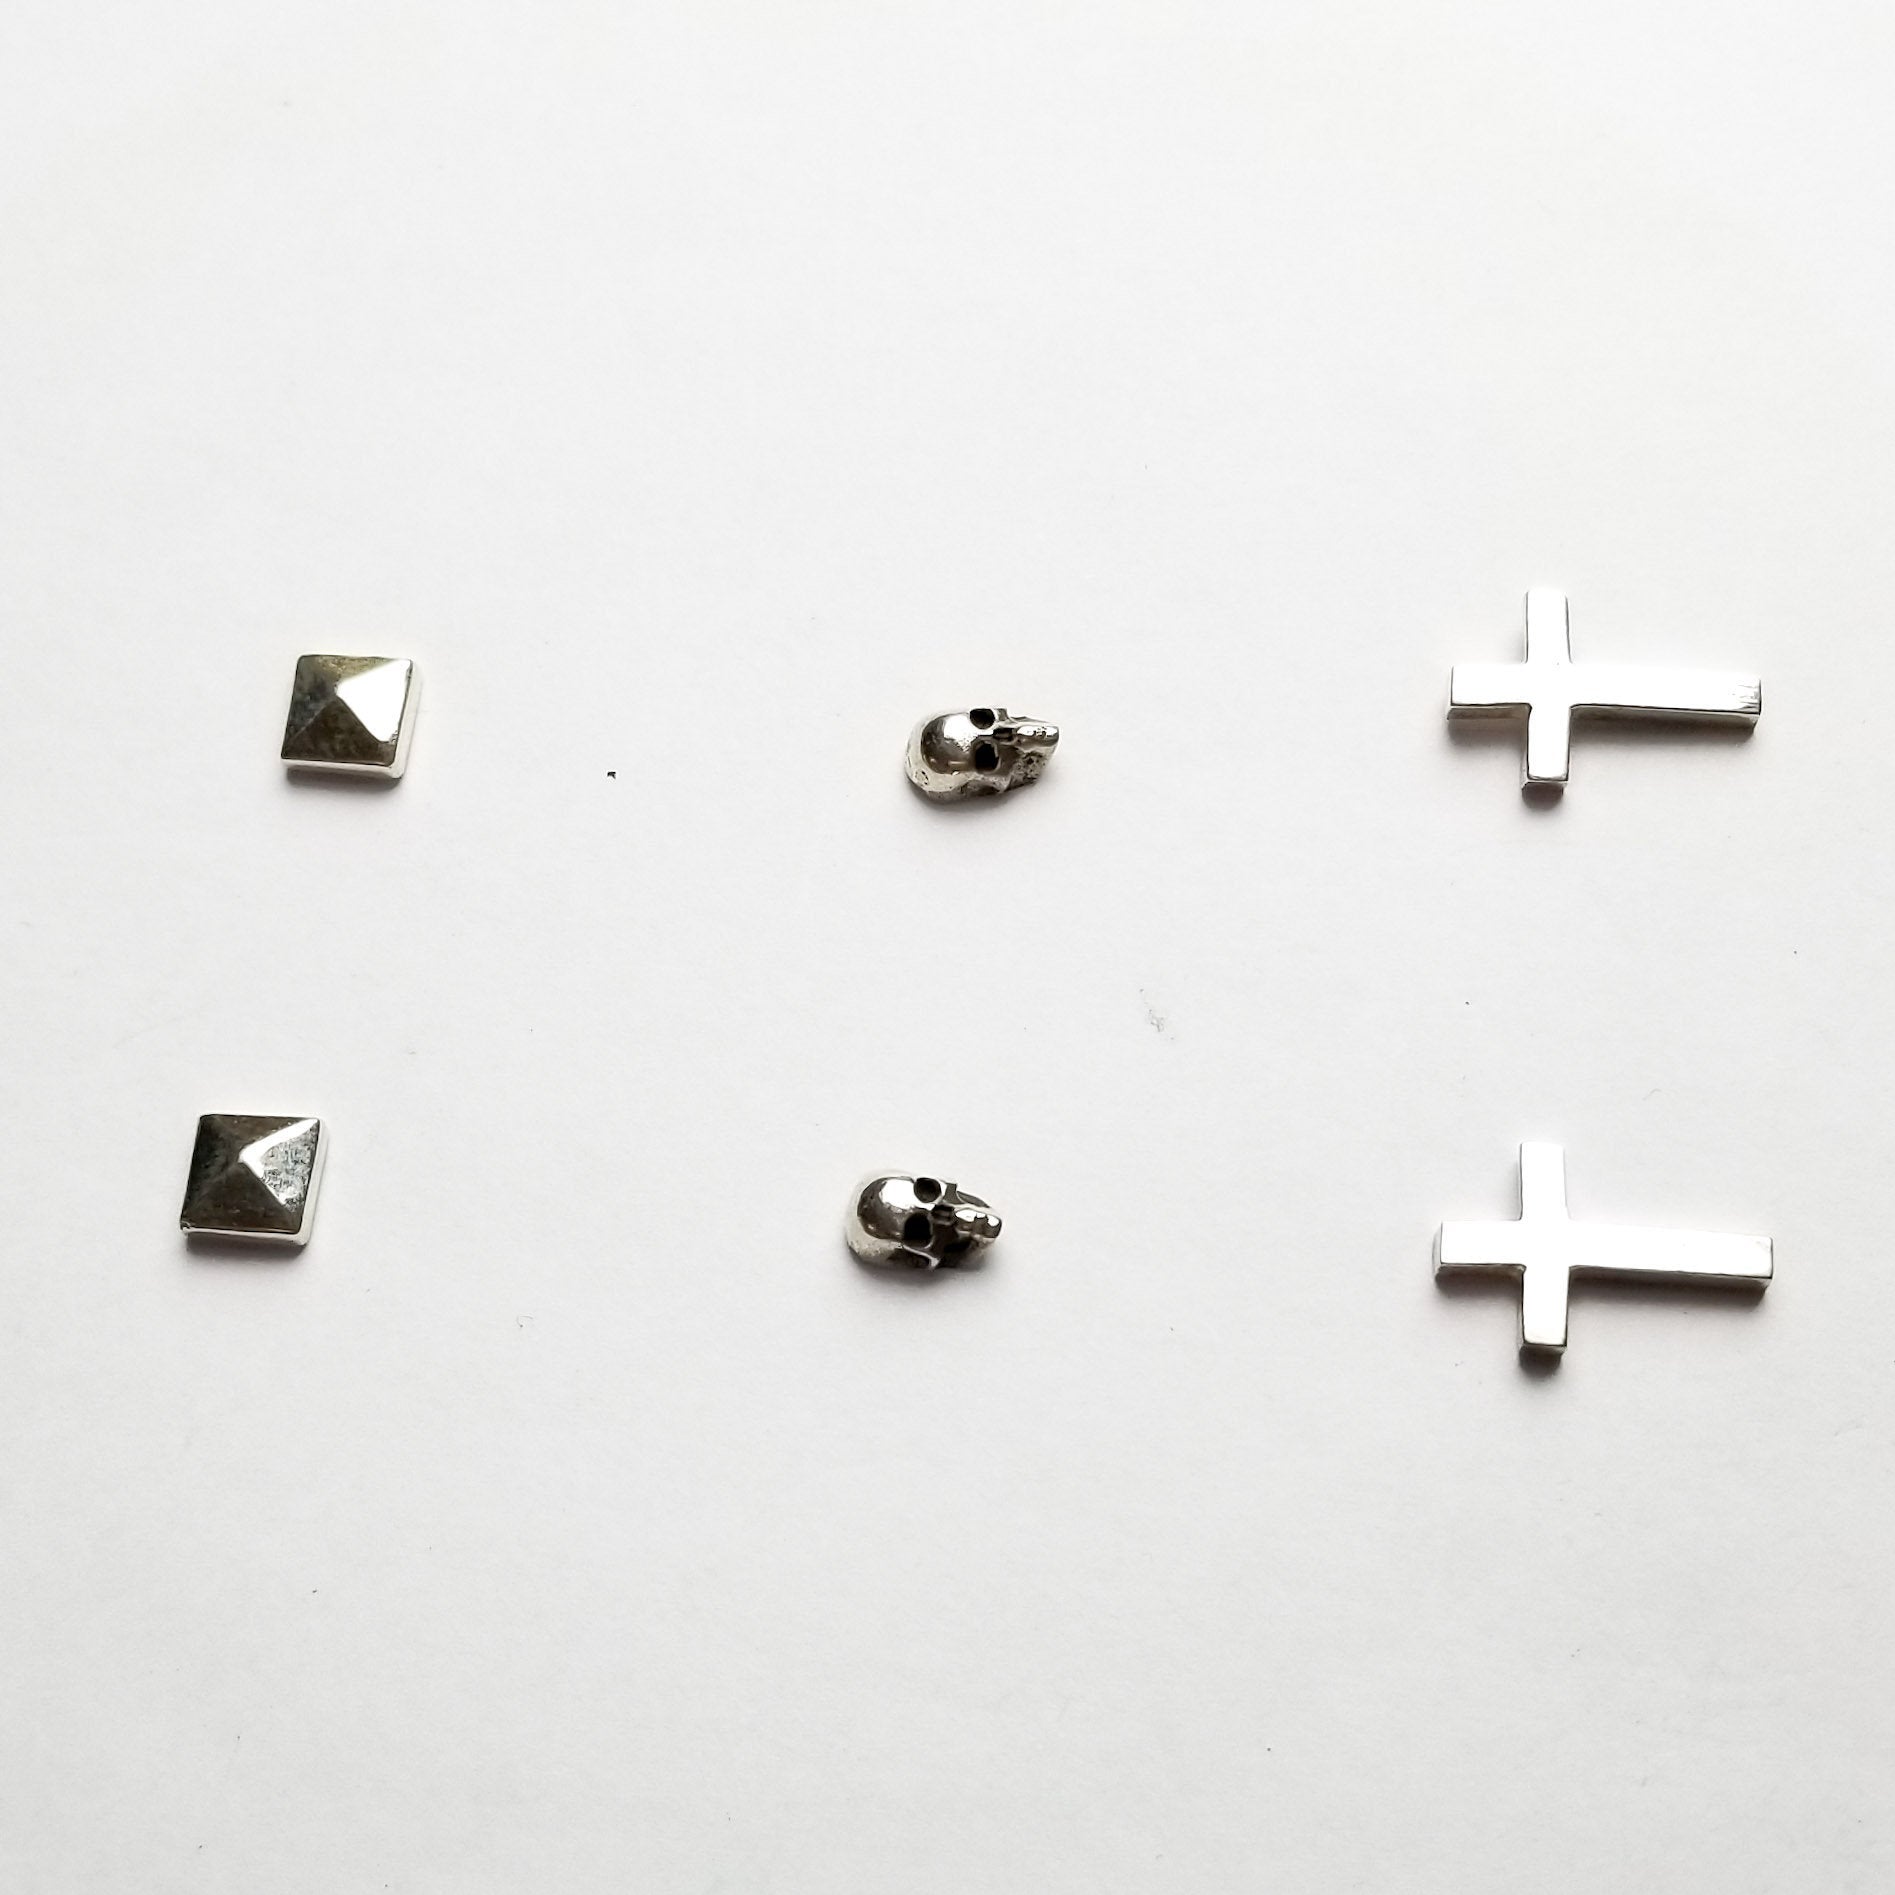 Set of 3 Pairs of Earrings #4 - Skull, Cross & Pyramid Studs - Inchoo Bijoux